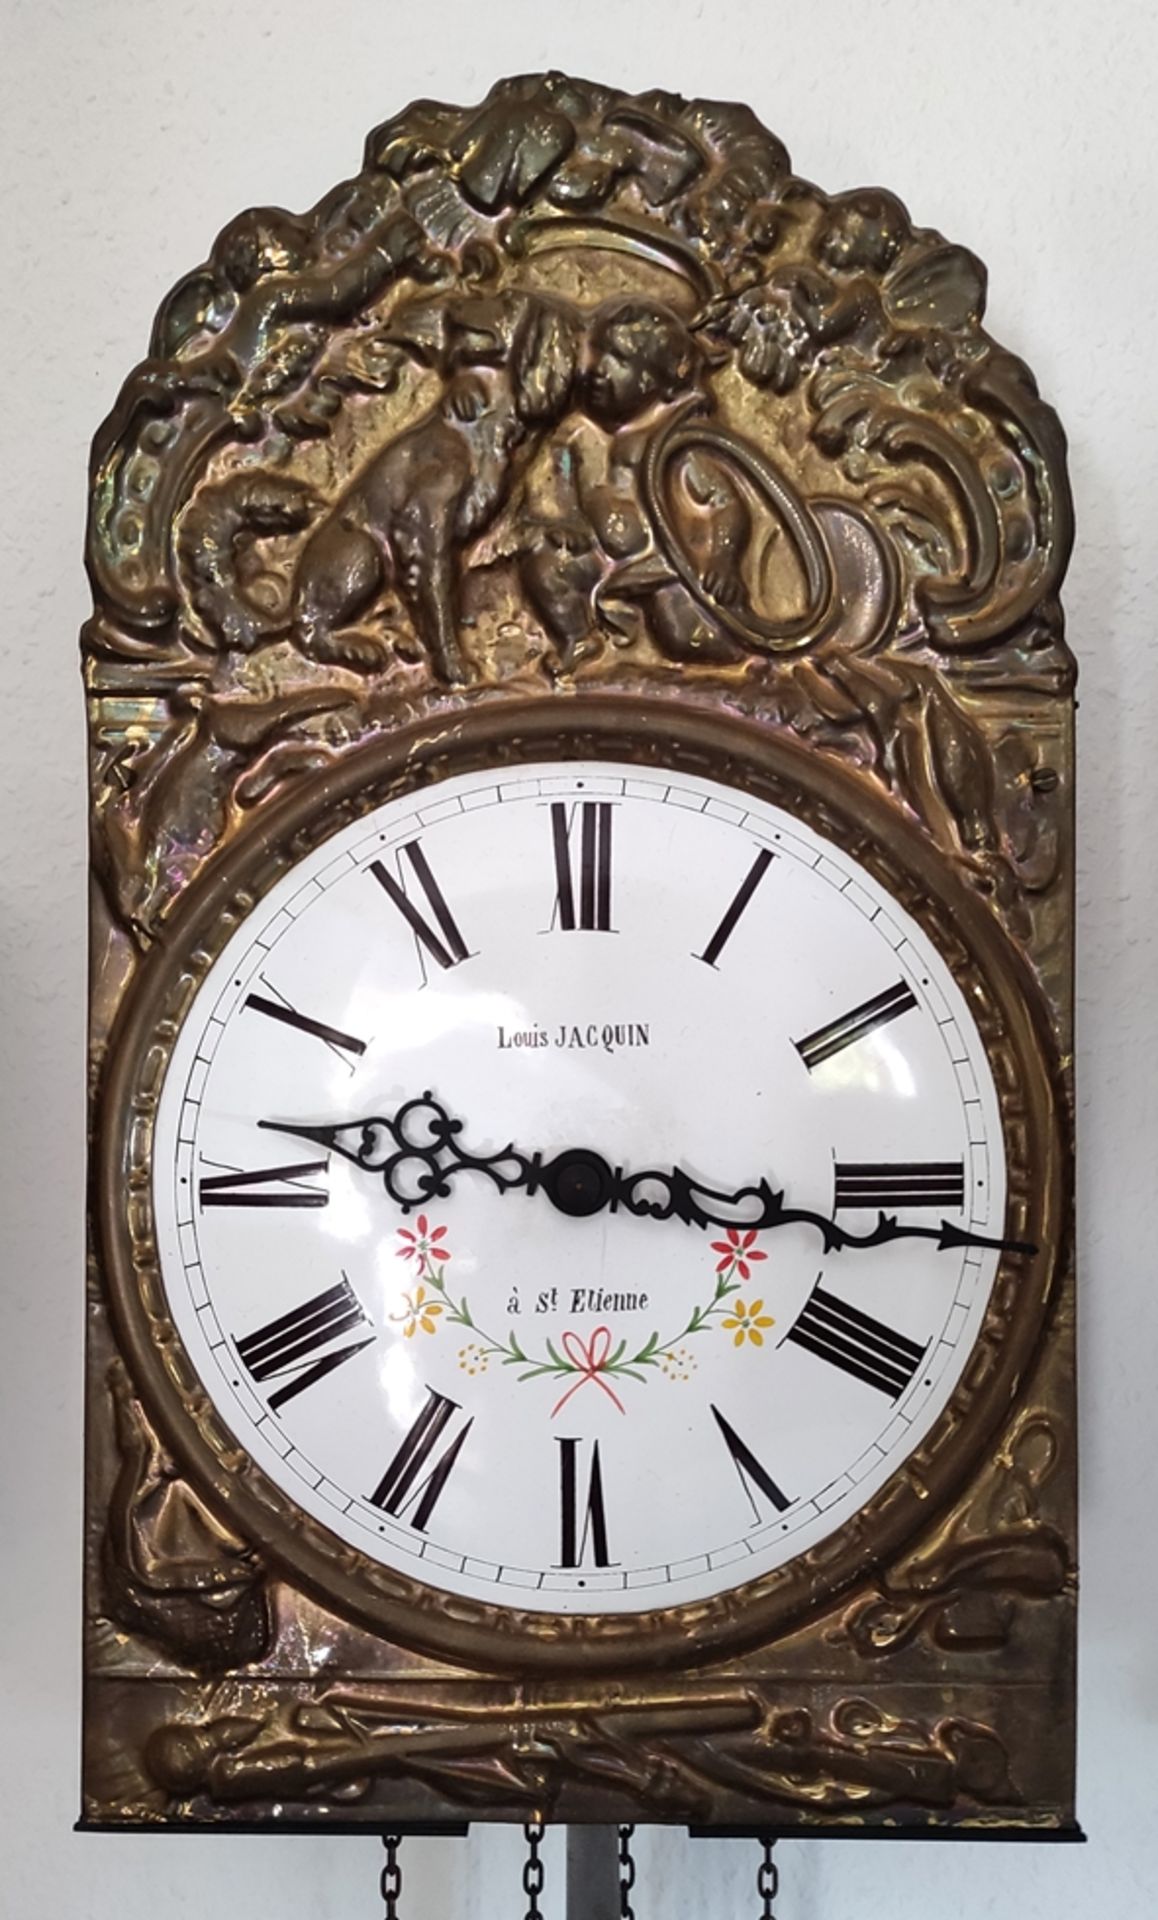 Comtoise Uhr/Pendeluhr/Burgunder Uhr, Emailziffernblatt mit römischen Ziffern, prunkvolles Messings - Bild 2 aus 2